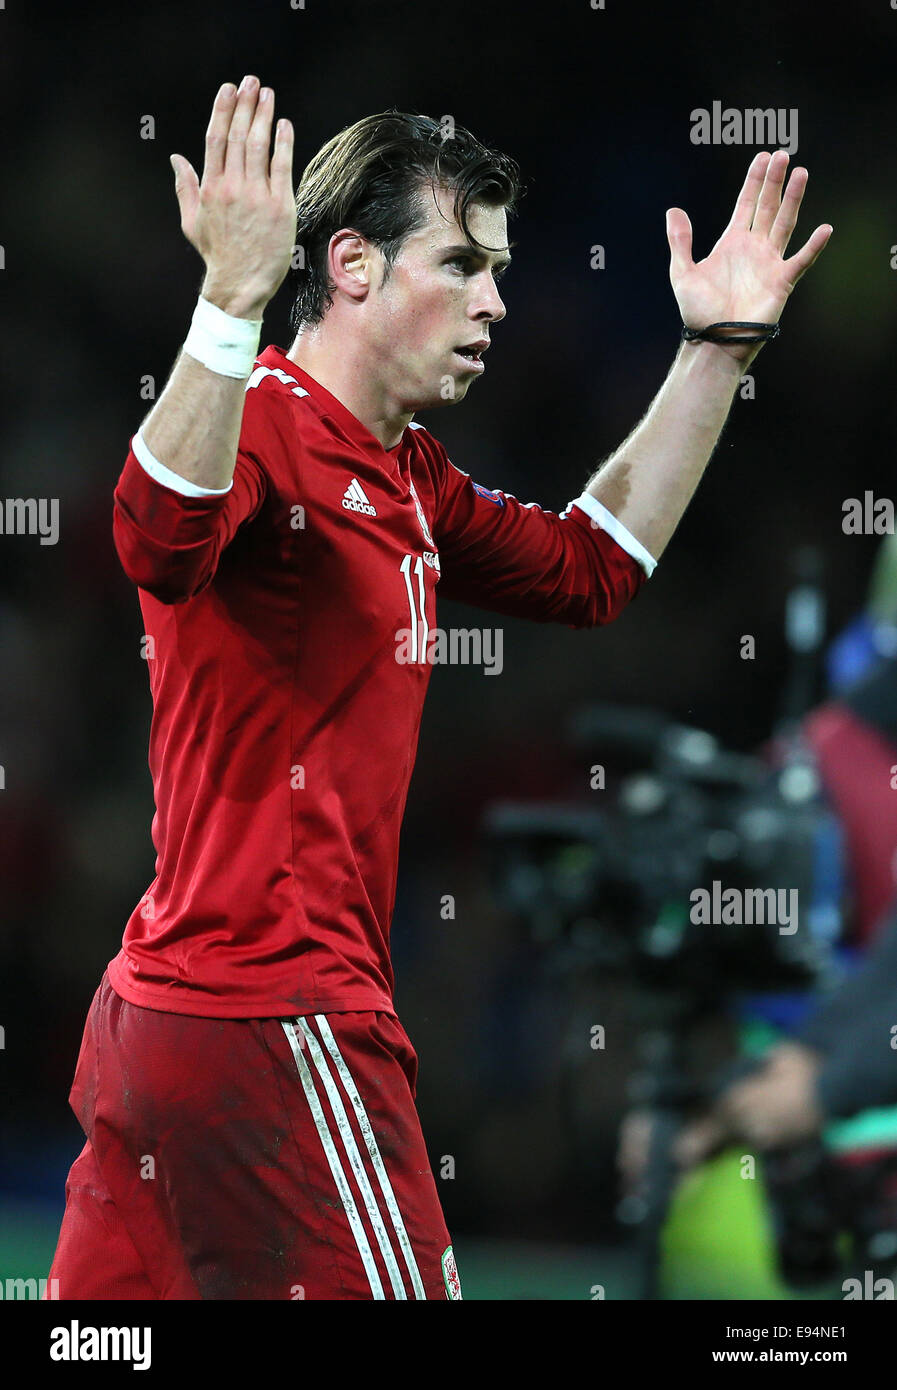 Cardiff, Royaume-Uni. 13 Oct, 2014. Gareth Bale de galles célèbre avec la foule - Euro 2016 Qualifications - Pays de Galles contre Chypre - Cardiff City Stadium - Cardiff - Pays de Galles - 13 octobre 2014 - Photo Simon Bellis/Sportimage. © csm/Alamy Live News Banque D'Images